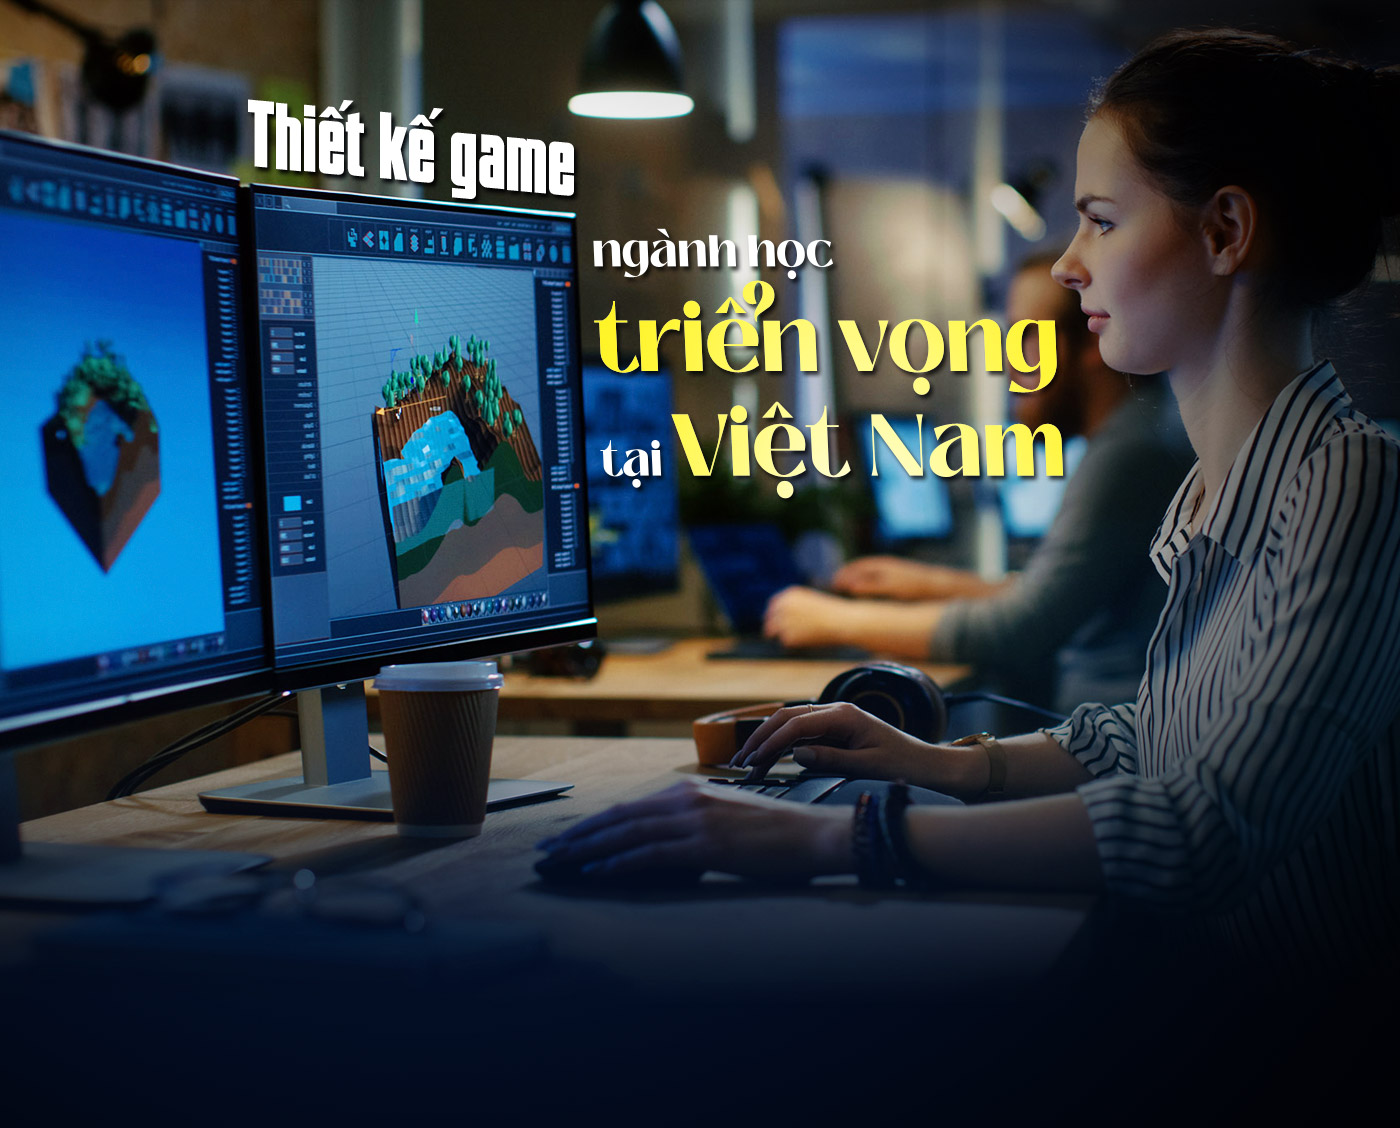 Thiết kế game - ngành học triển vọng tại Việt Nam - Ảnh 1